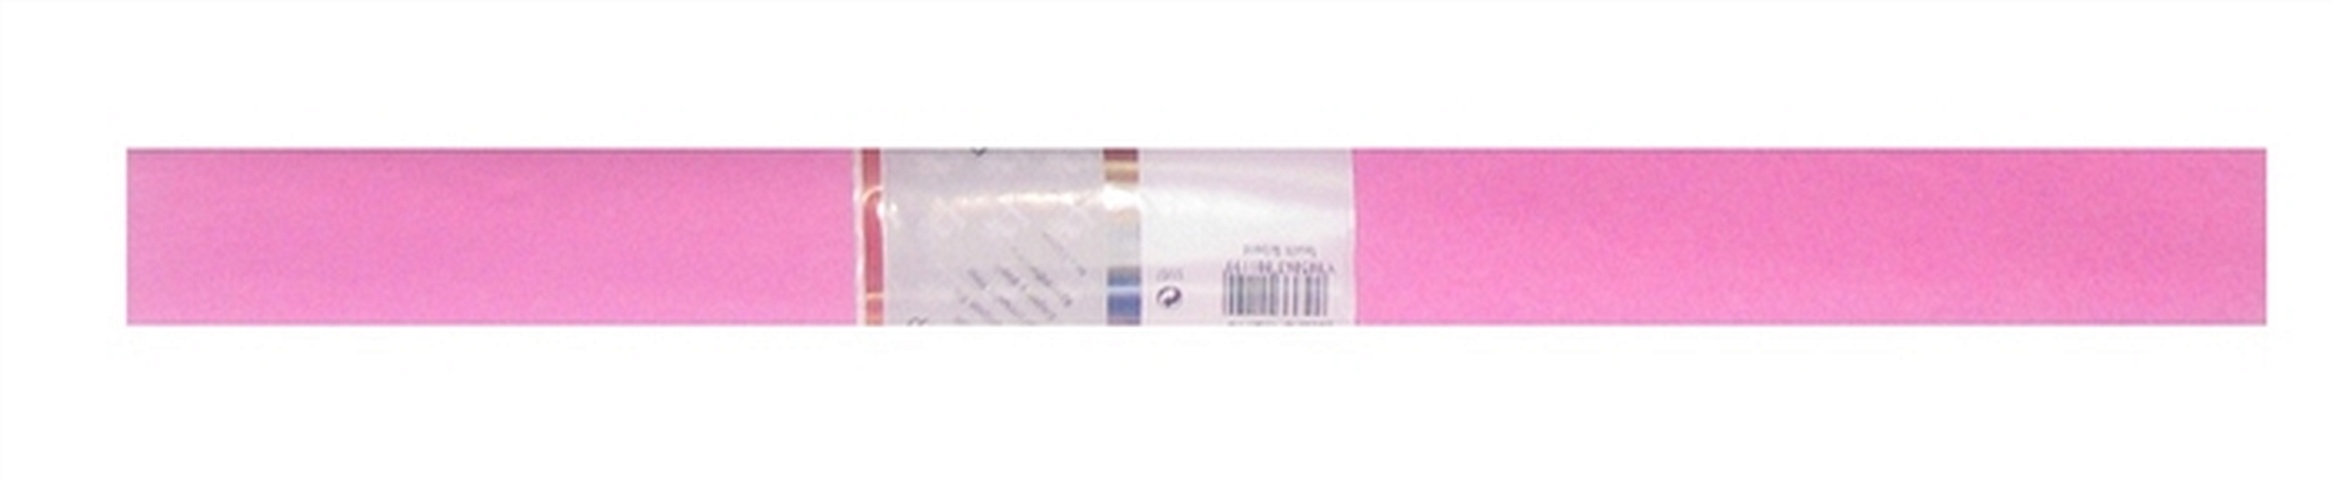 Бумага гофрированная Розовая 50*250, WEROLA бумага гофрированная оливк 50 250 werola